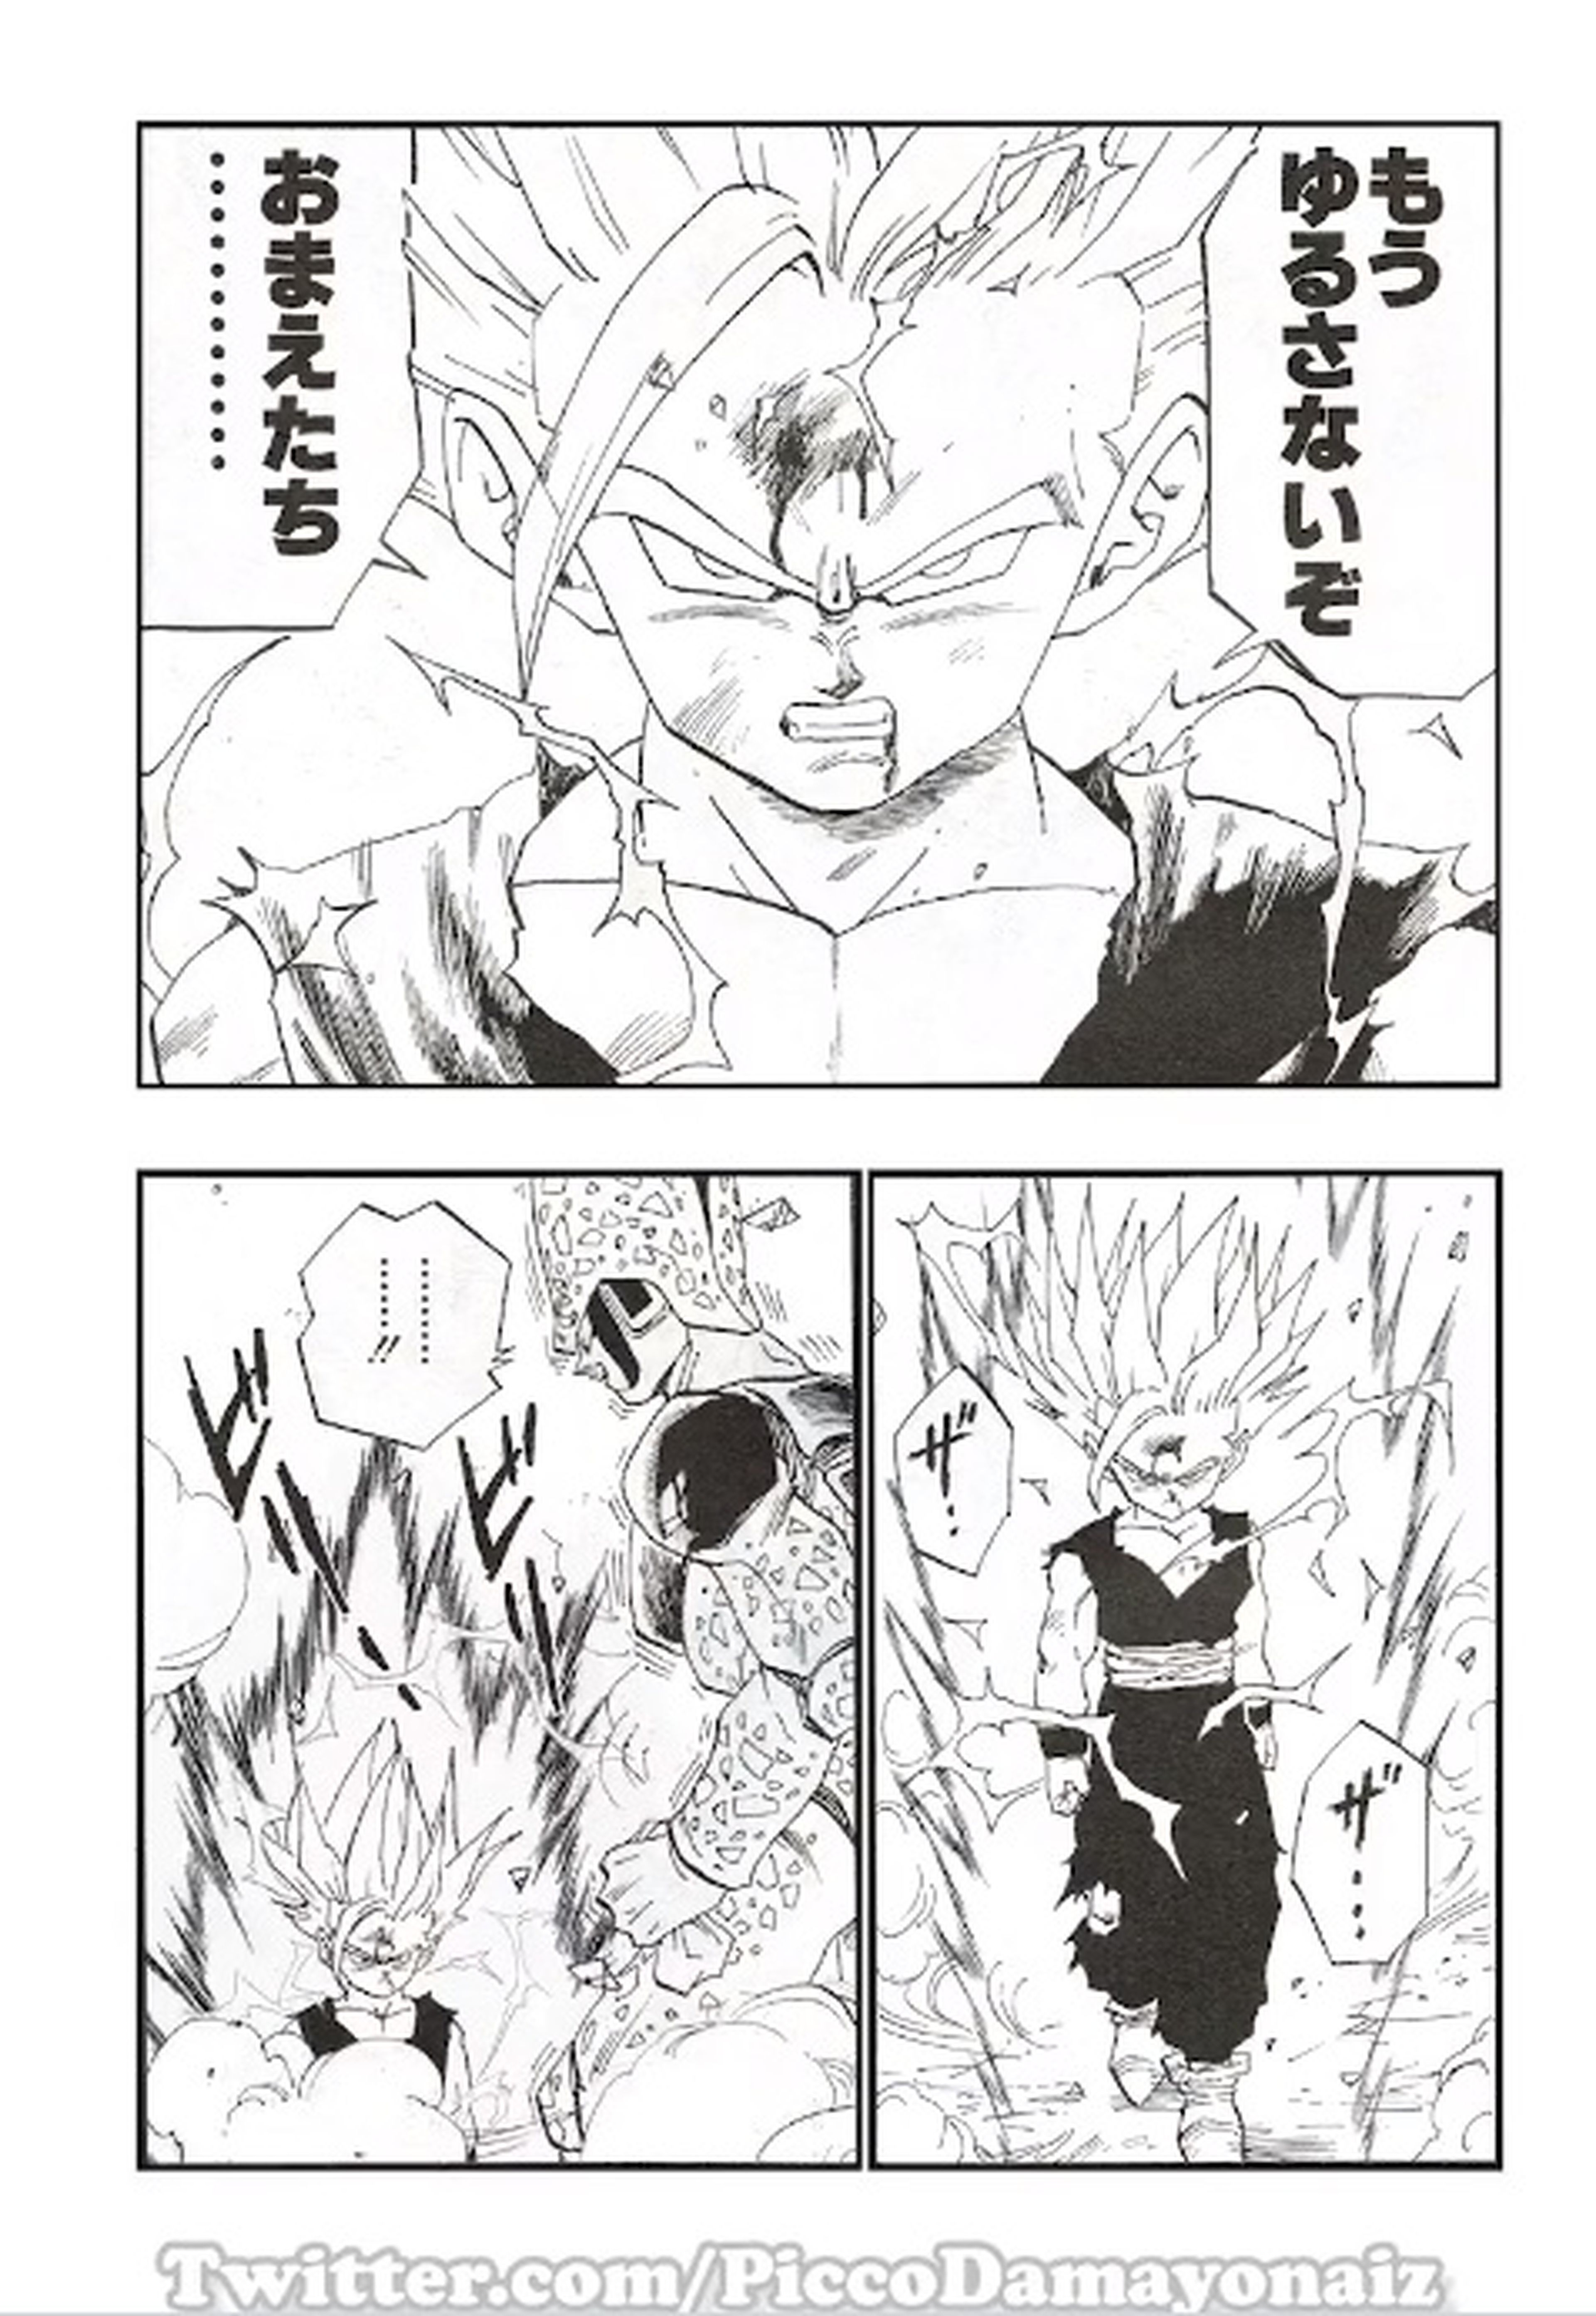 Dragon Ball - El manga de Akira Toriyama cobra vida gracias al proyecto de  este fan